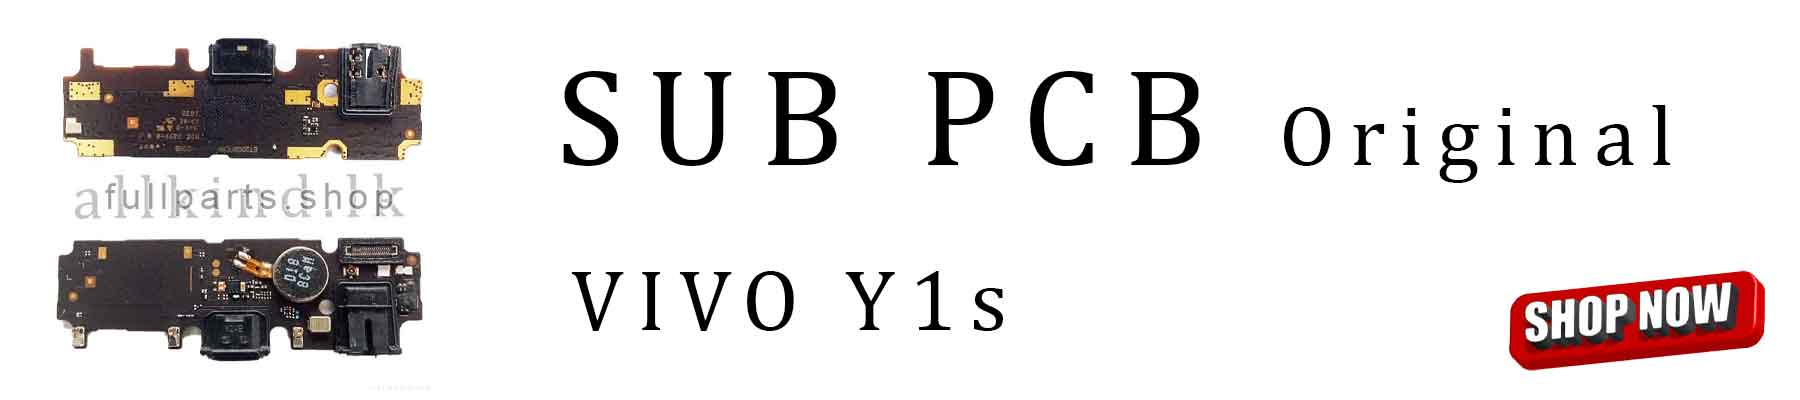 Y1S-VIVO-SUB-PCB